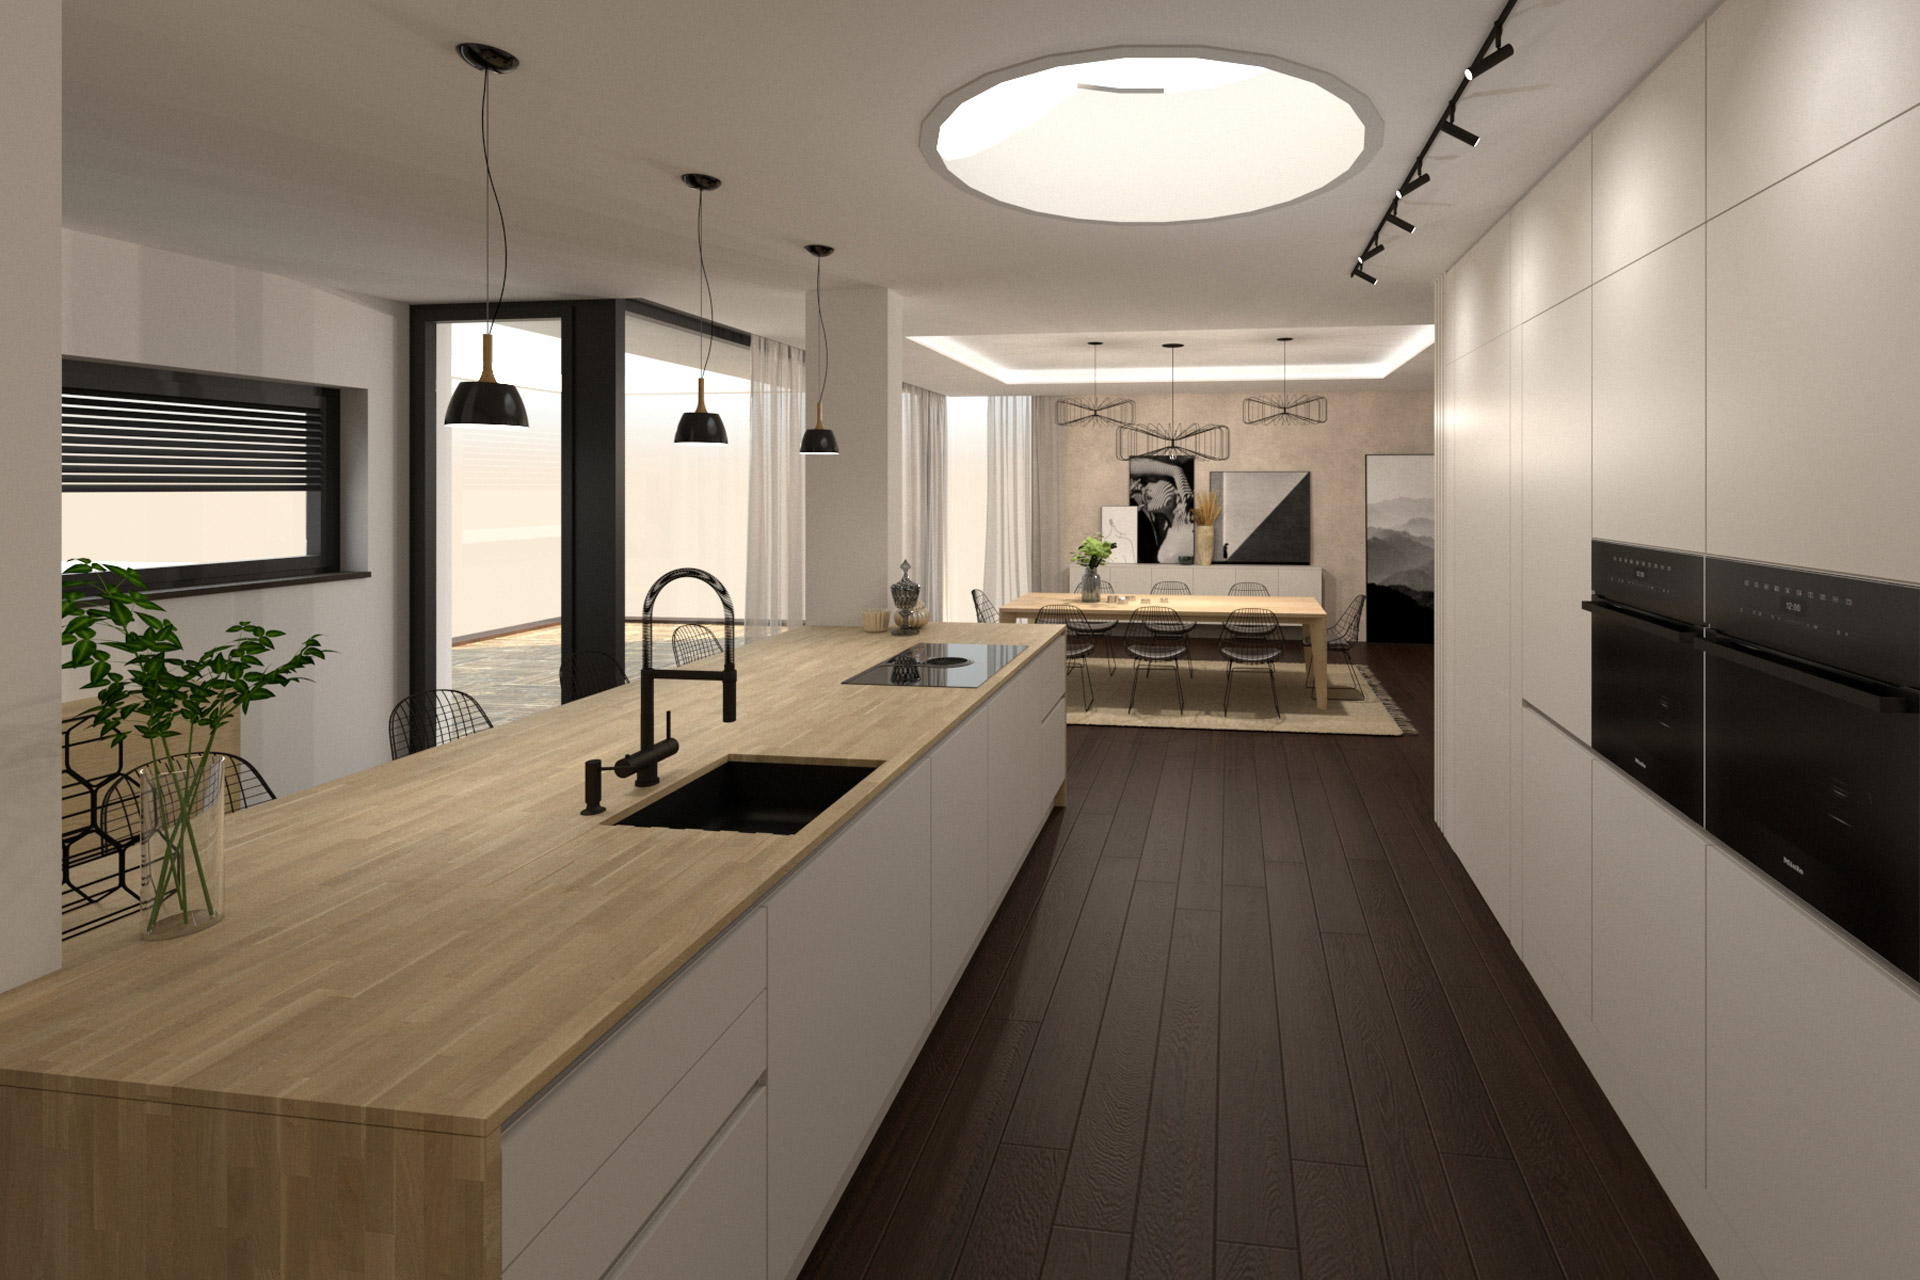 Hanák Návrh moderního interiéru Kuchyně